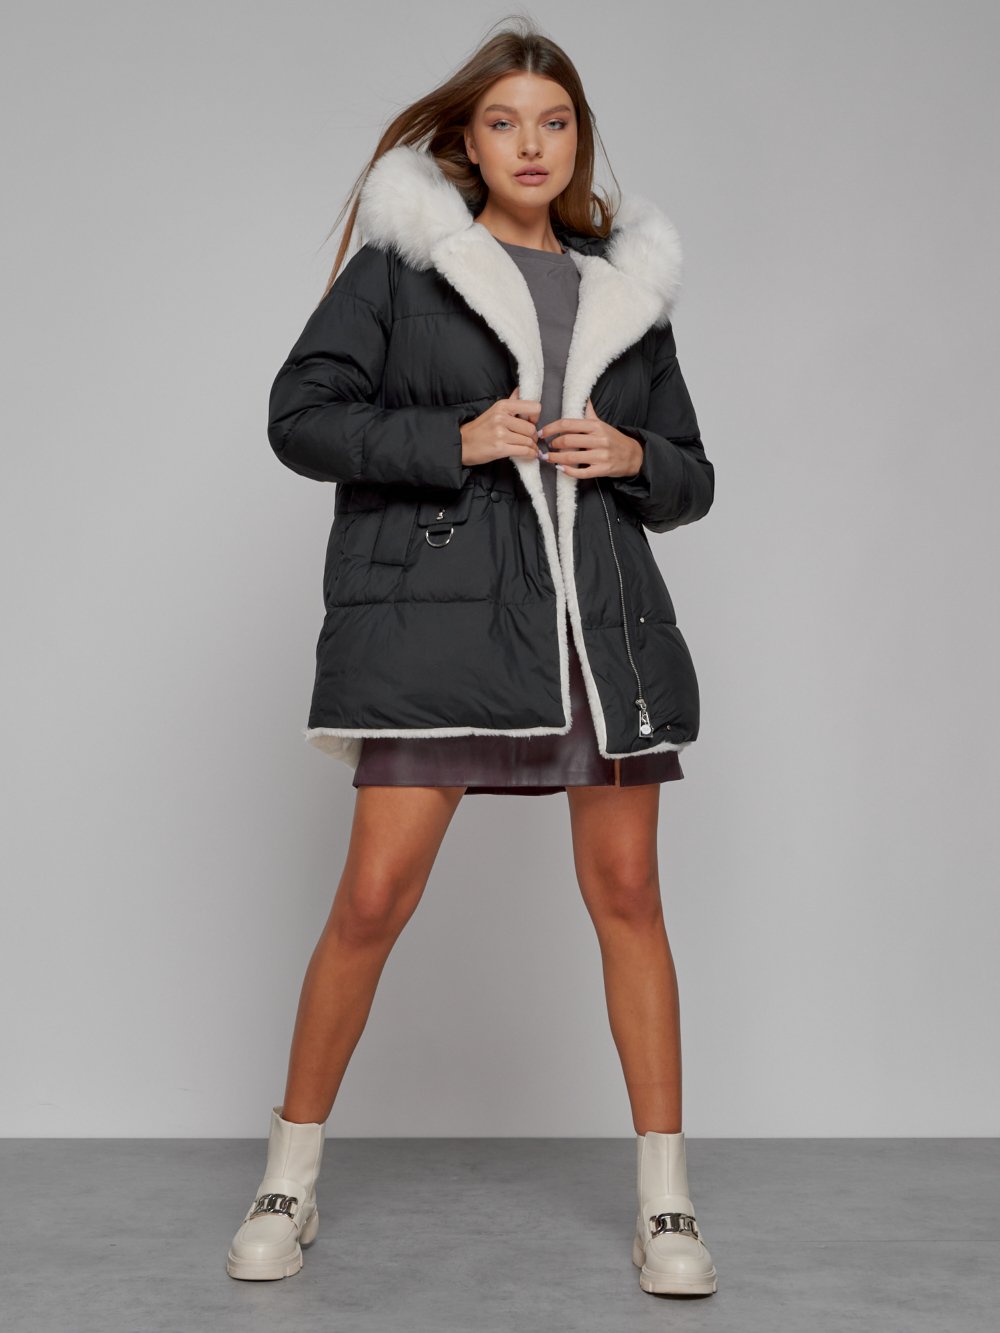 Купить куртку женскую оптом от производителя недорого в Москве 133120Ch 1